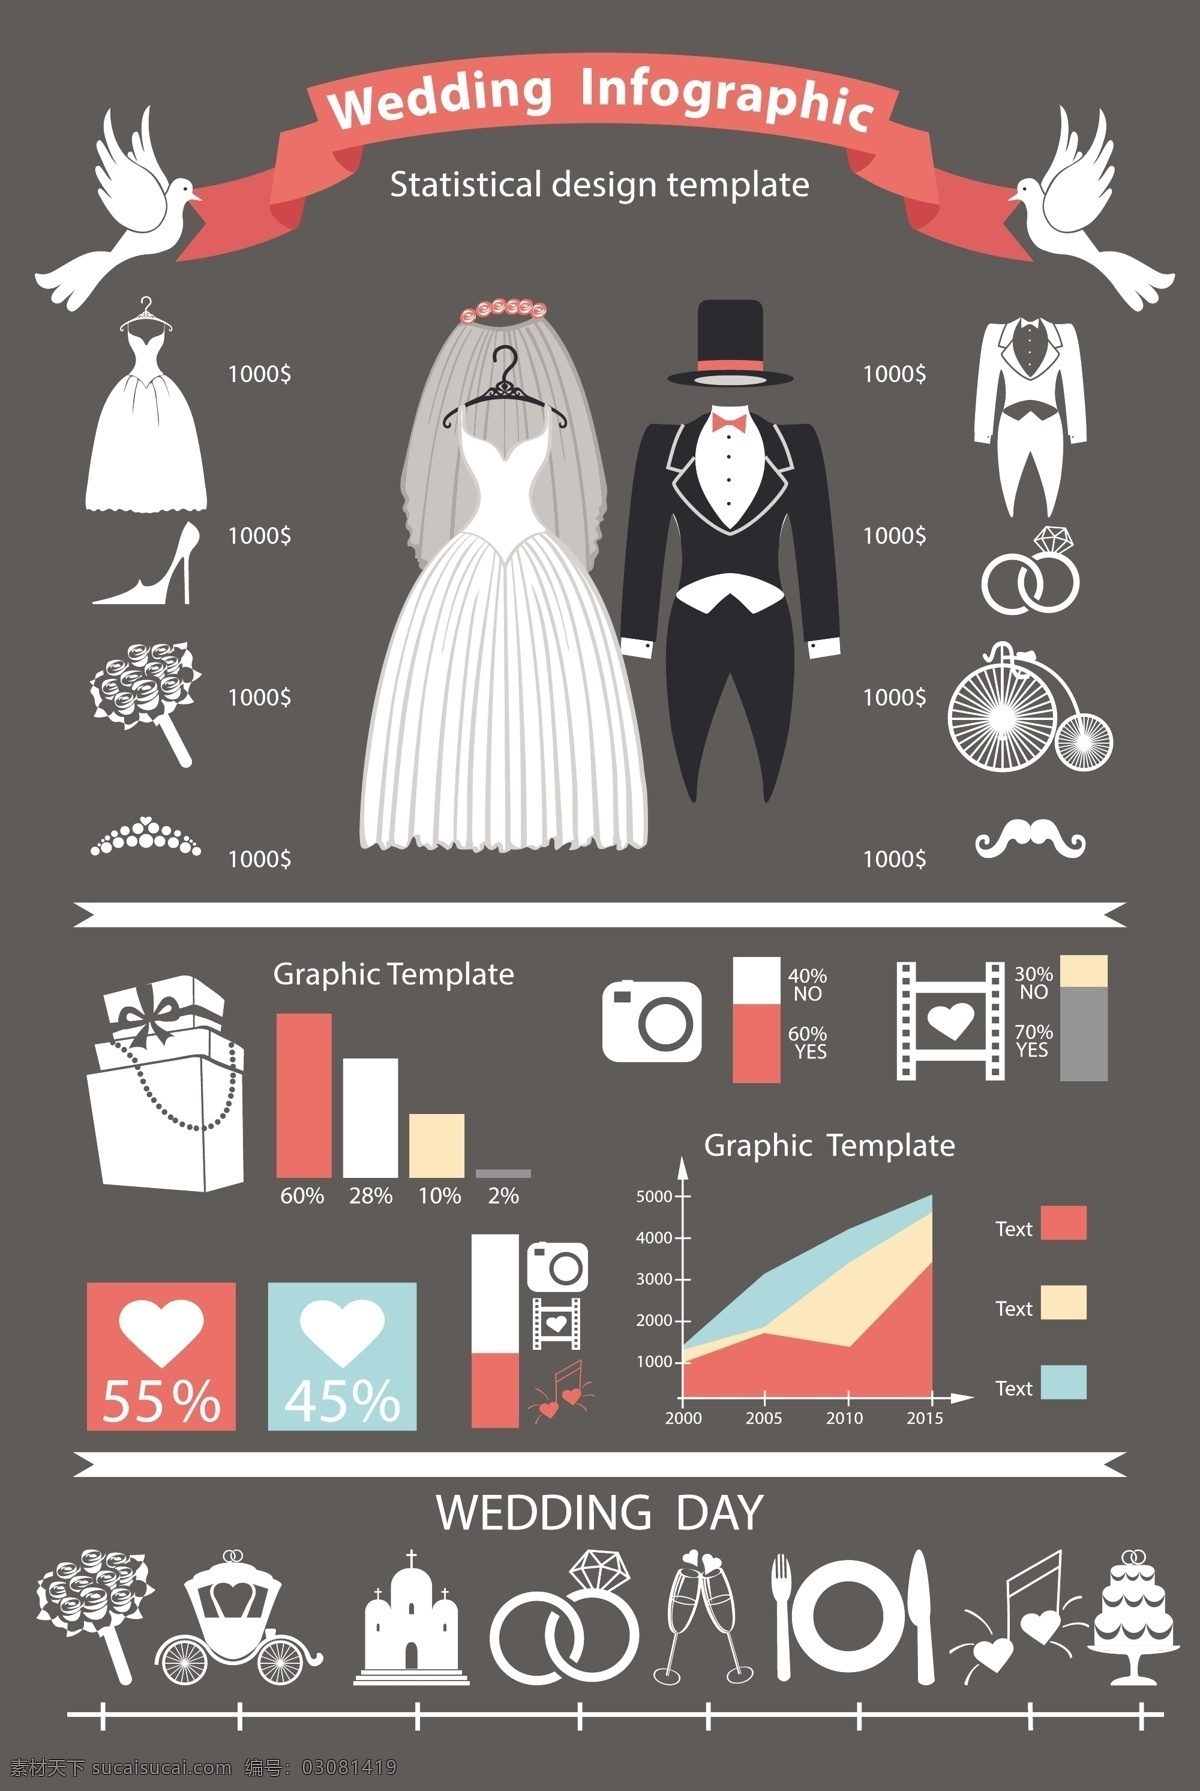 婚纱礼服 信息 图表 模板下载 坐标 比例图 礼物 礼包 钻戒 戒指 信息图表 结婚 婚礼素材 商务金融 矢量素材